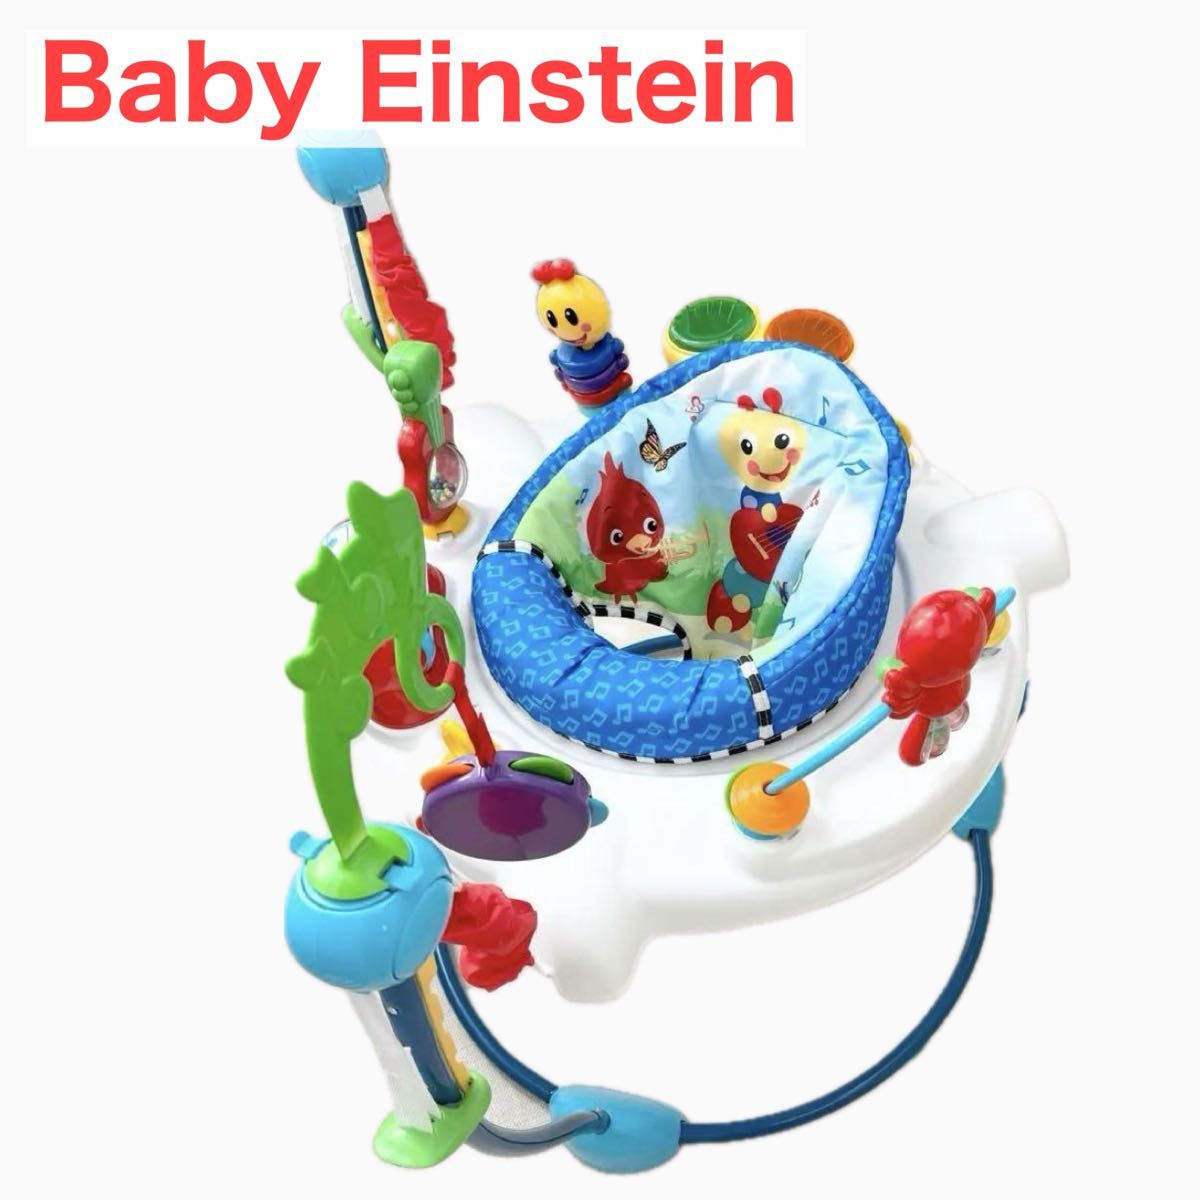 Baby Einstein ベビーアインシュタイン ジャンパルー 室内遊具